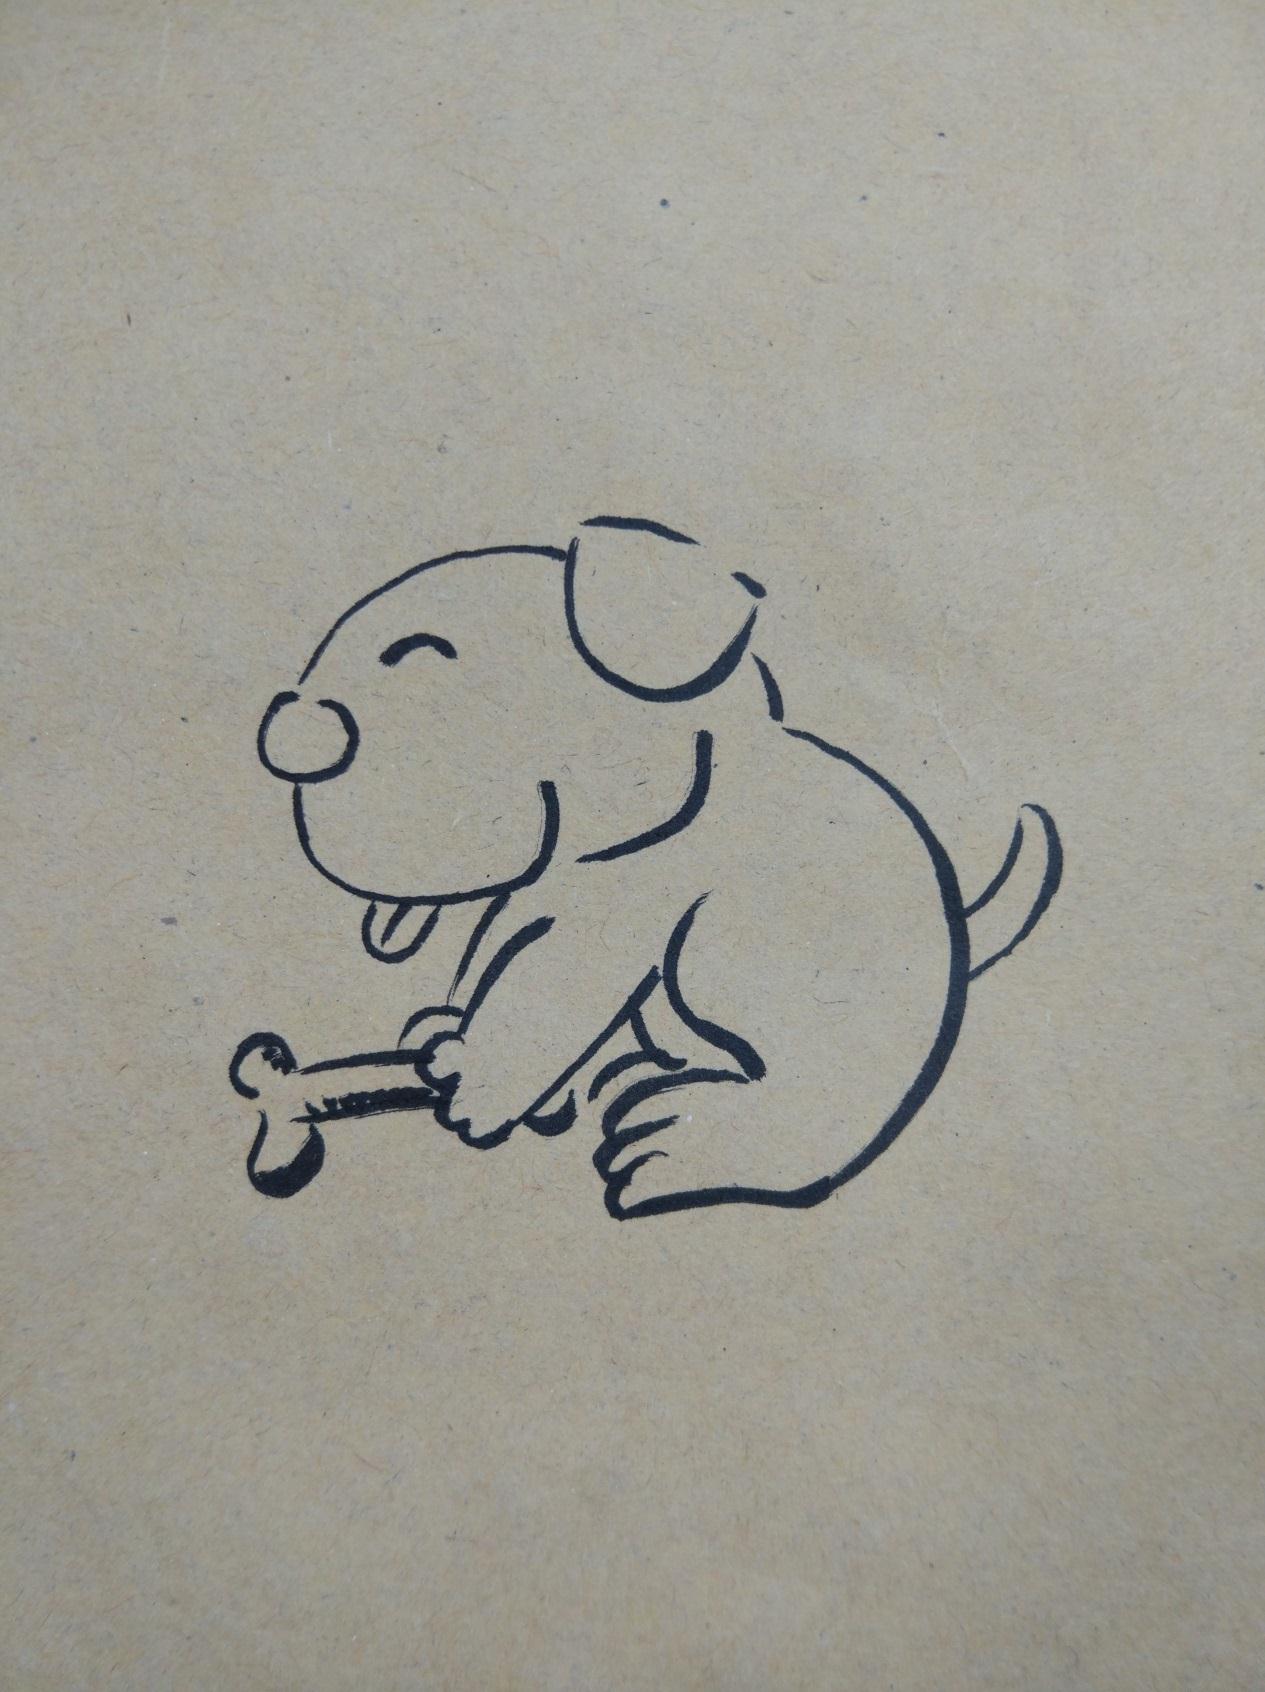 教你画一张简单可爱的卡通小狗 创意手绘图基础